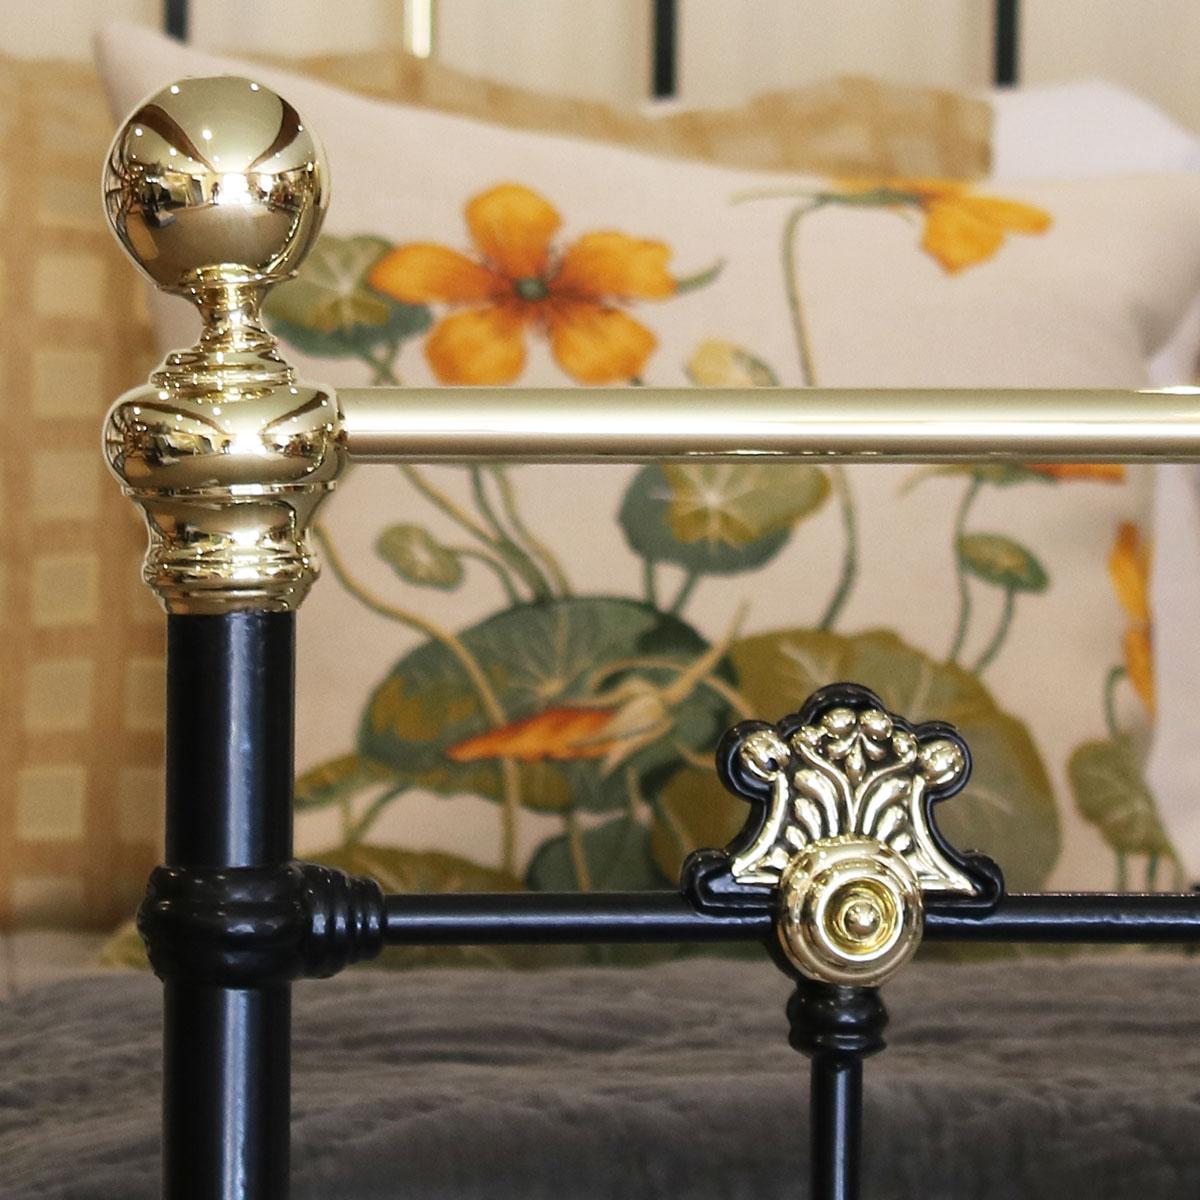 19th Century Decorative Black Antique Bed MK200